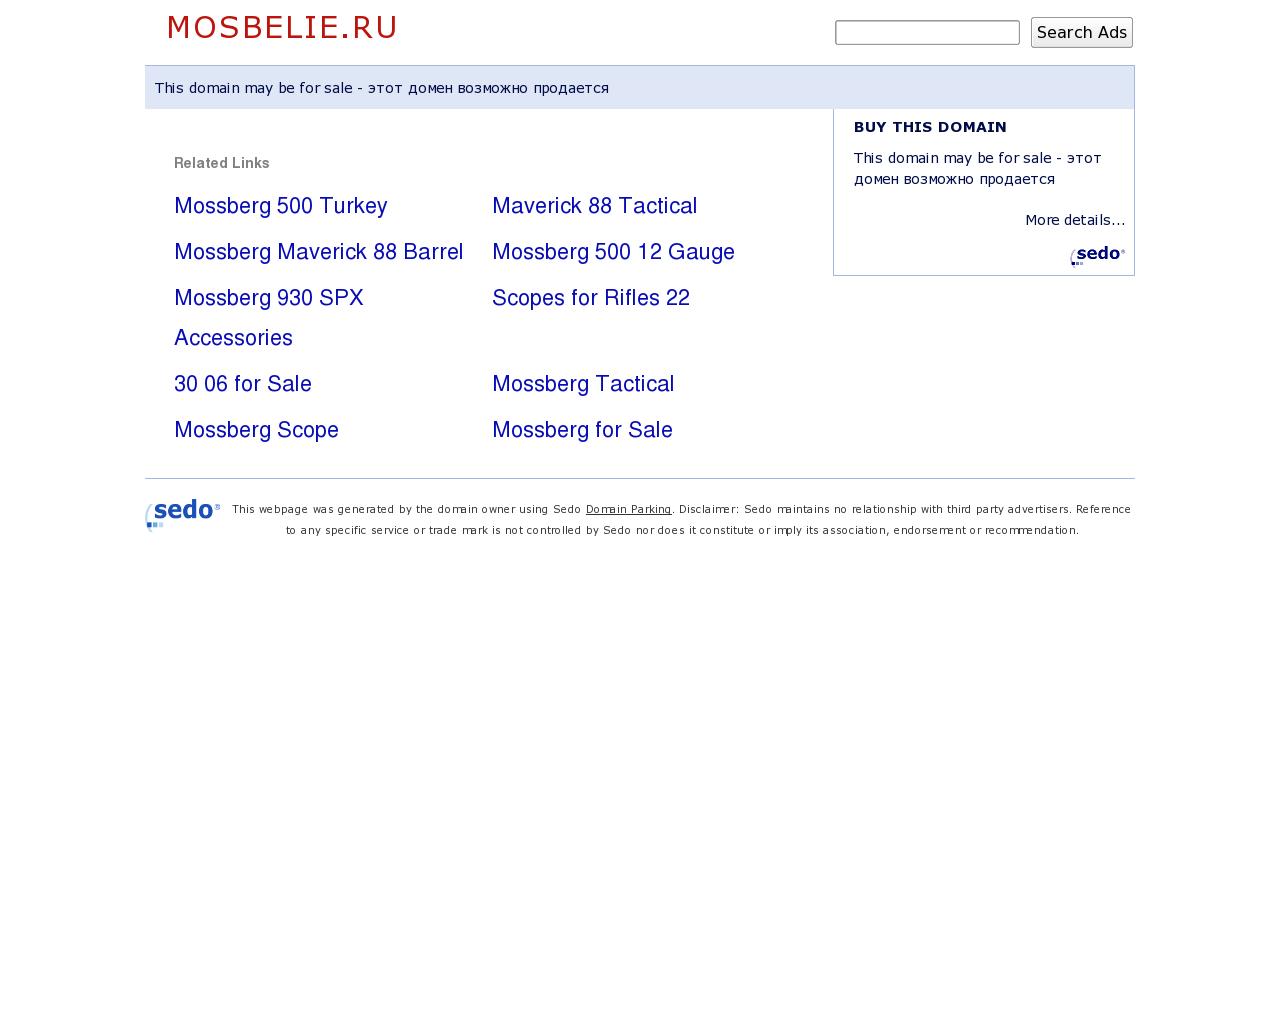 Изображение сайта mosbelie.ru в разрешении 1280x1024